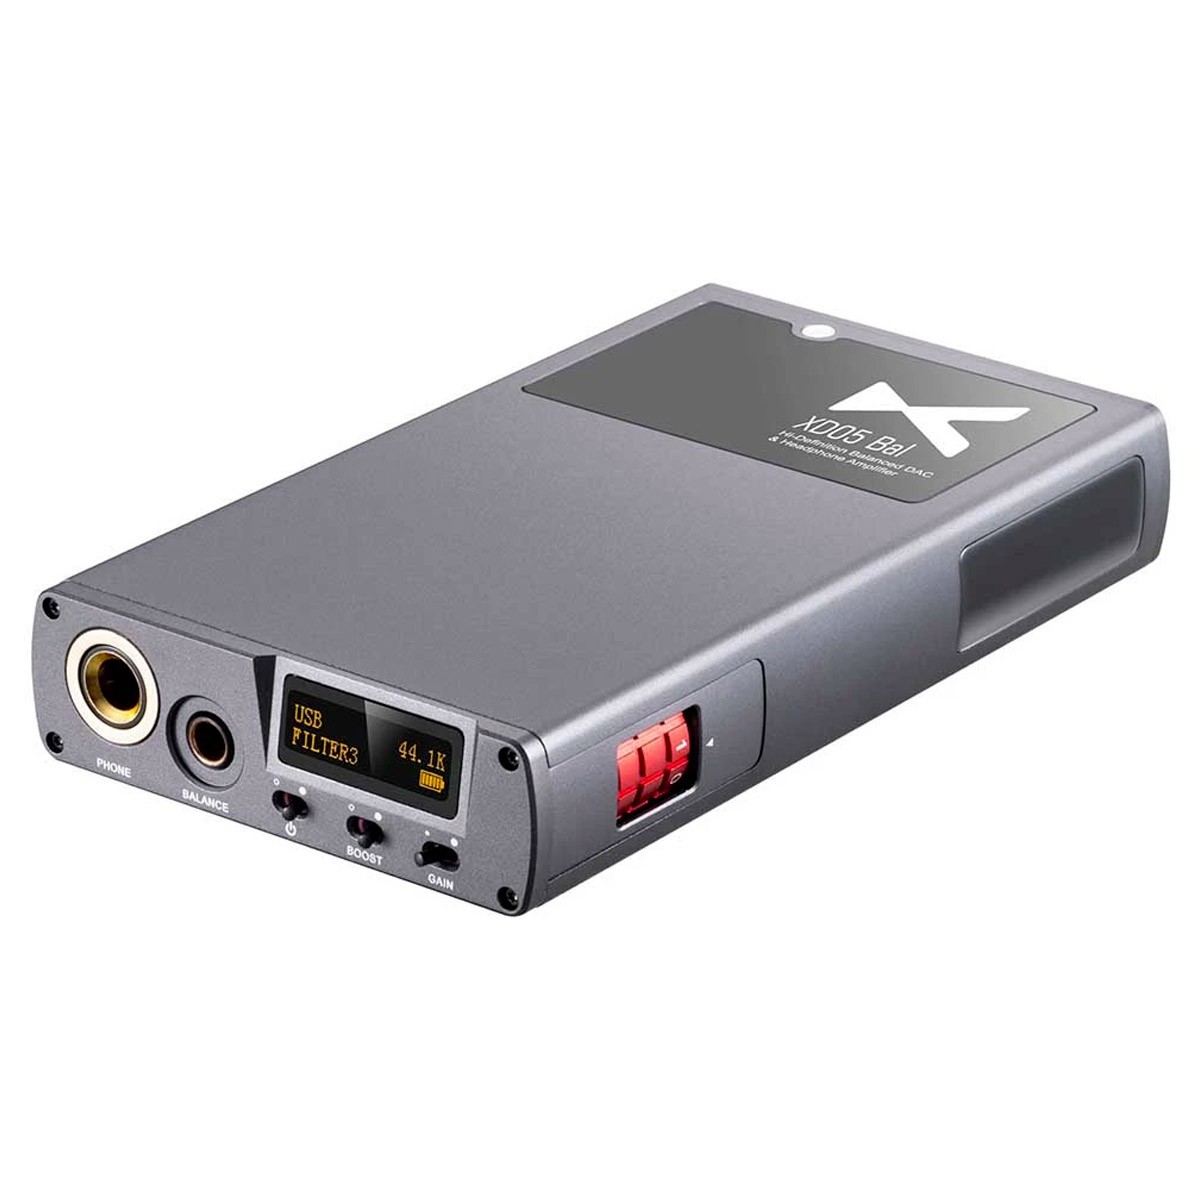 [GRADE S] XDUOO XD05 BAL Amplificateur Casque Portable Symétrique 2x ES9038Q2M XMOS Bluetooth 5.0 32bit 768kHz DSD512 Argent